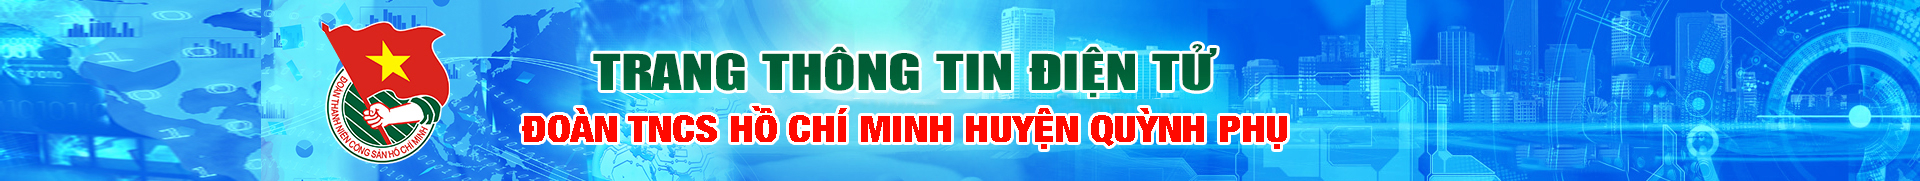 Huyện Đoàn Quỳnh Phụ - Thái Bình